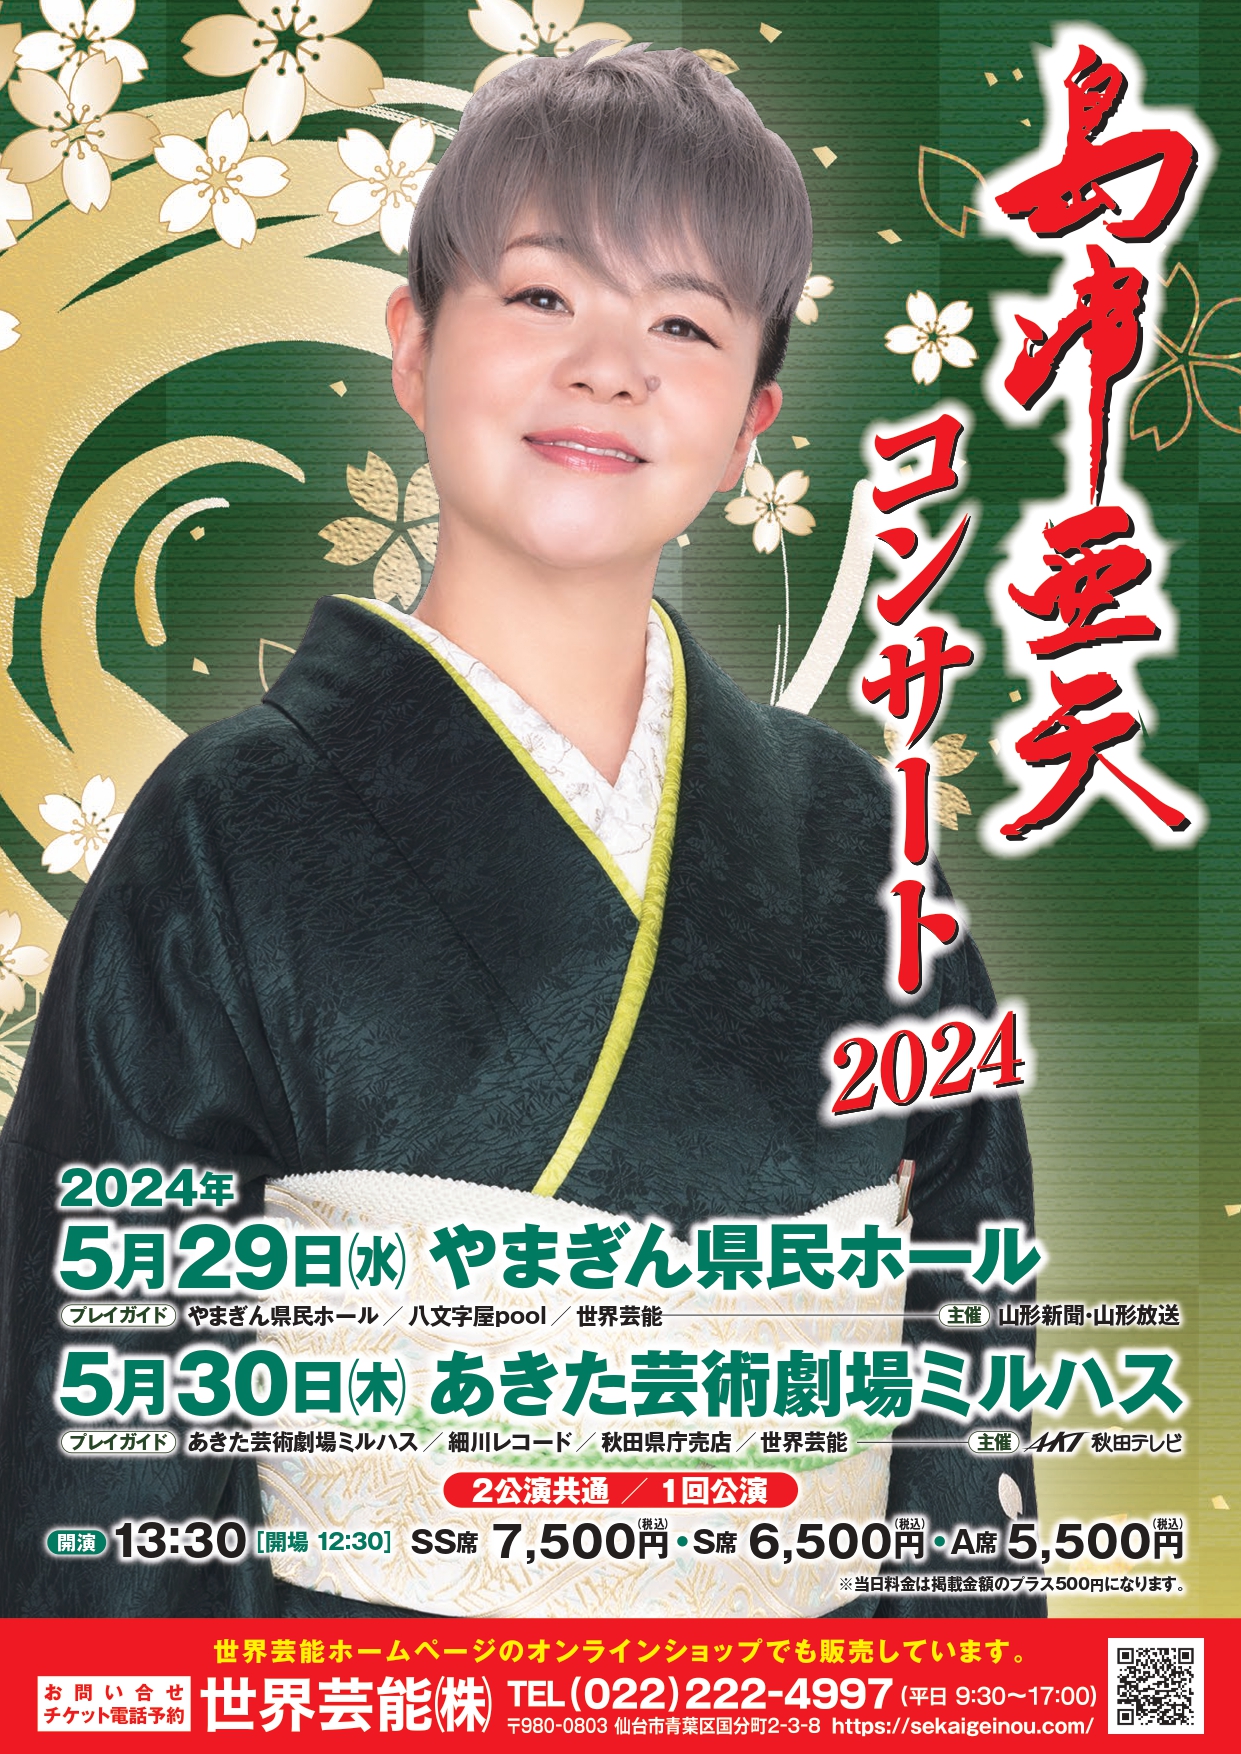 「島津亜矢コンサート2024 IN 秋田」のポスター